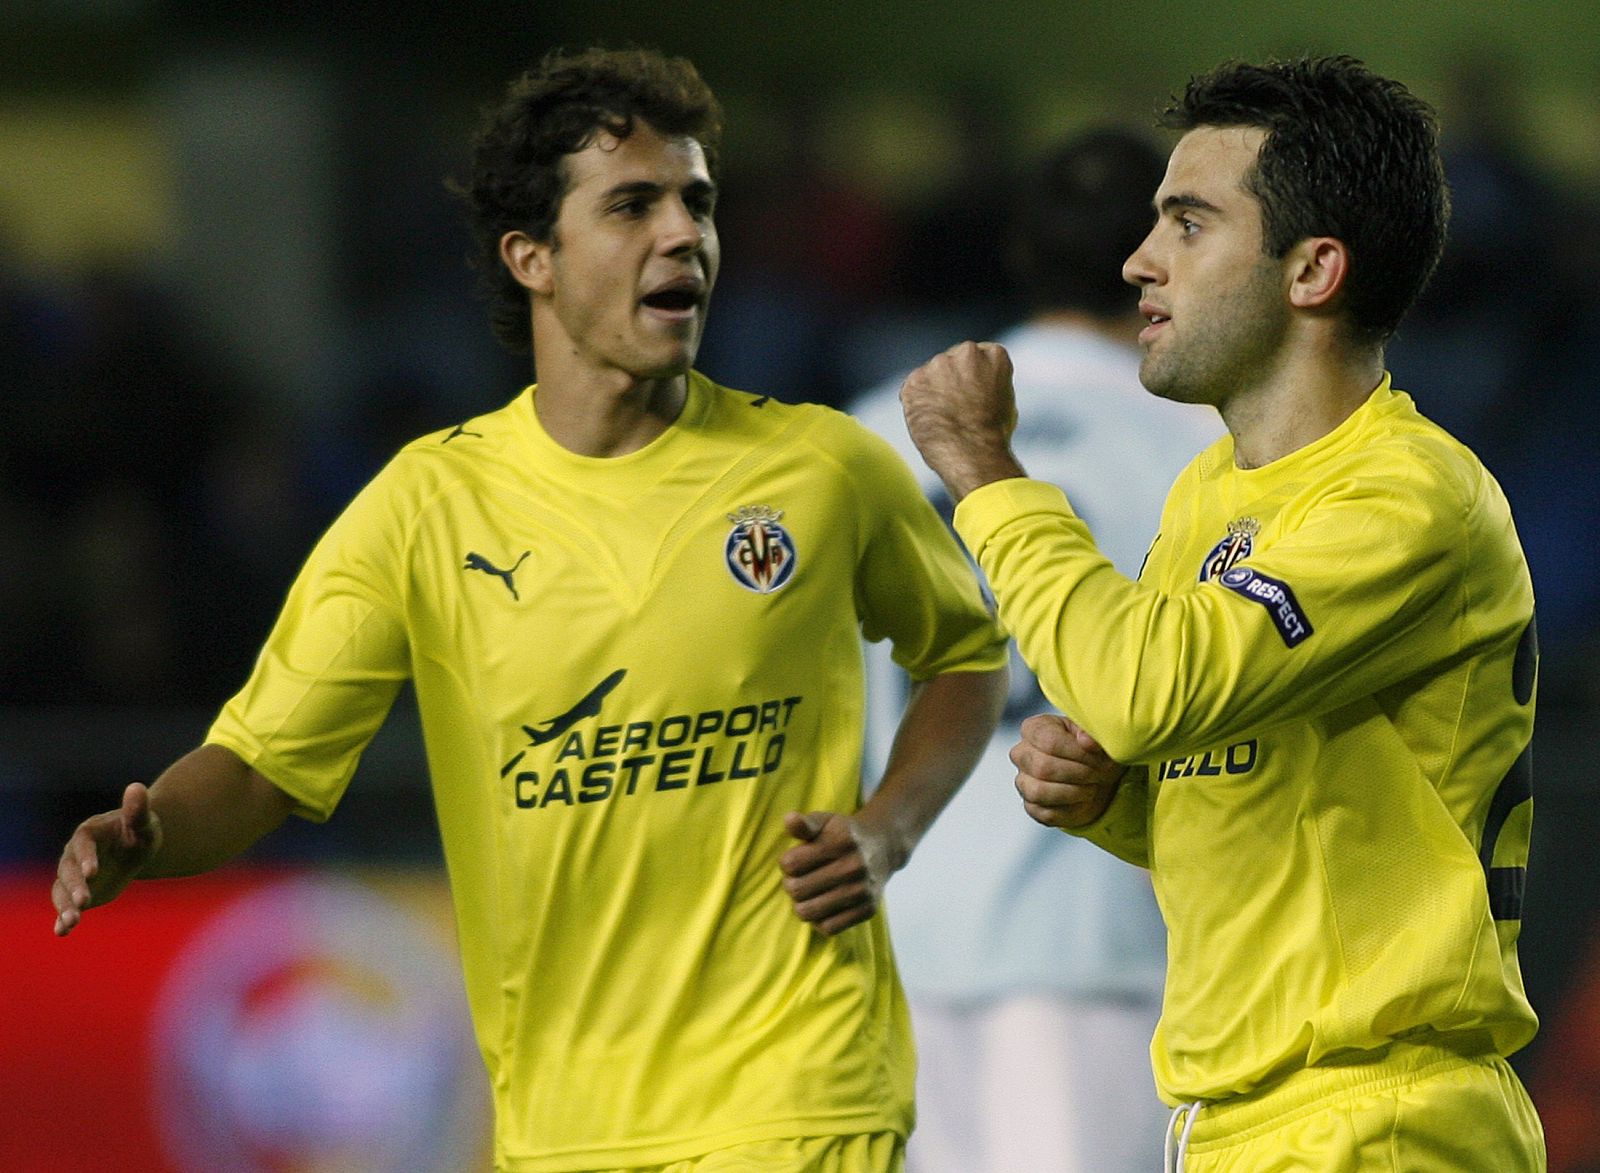 El Villarreal podría lograr la clasificación a la siguiente fase con una victoria.